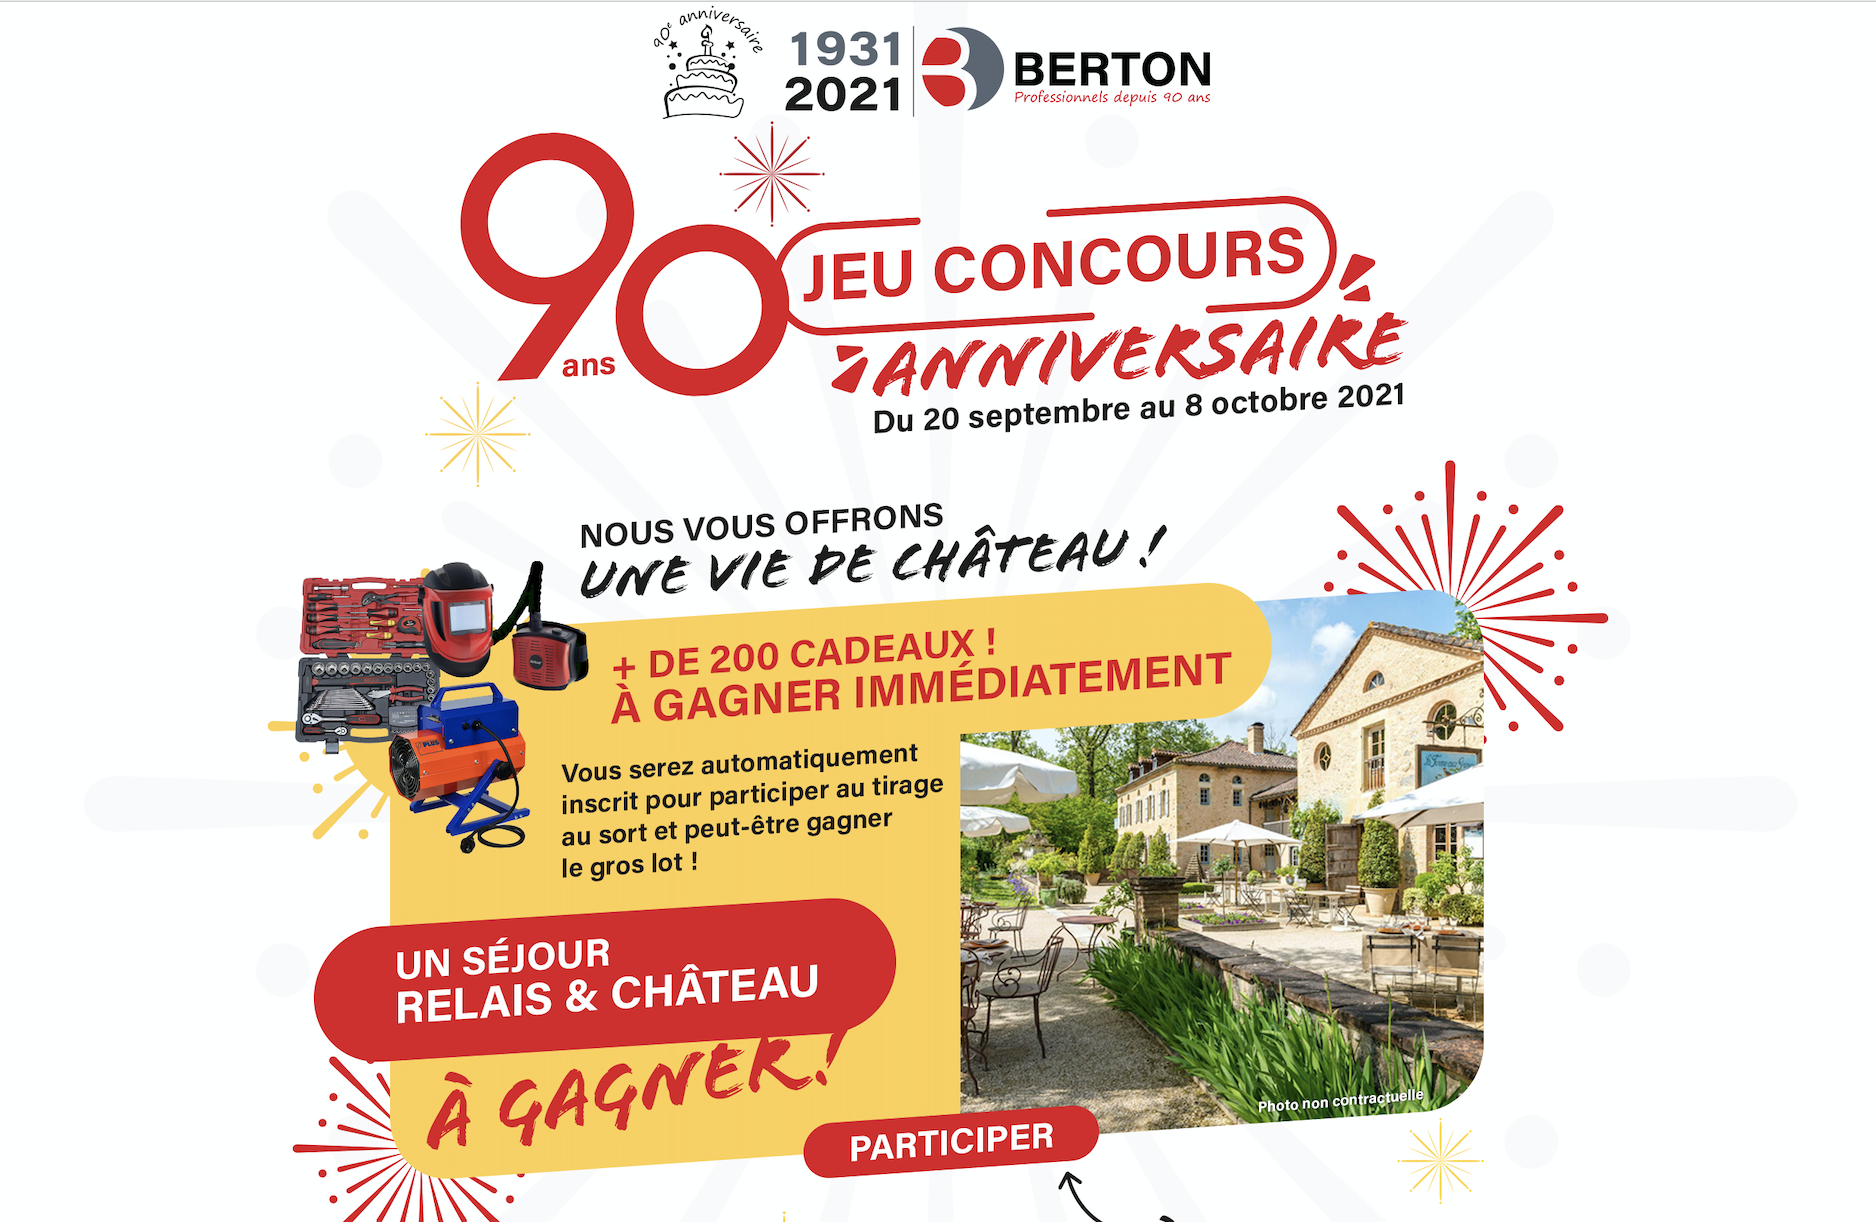 Berton fête son 90ème anniversaire au travers d’un jeu concours web